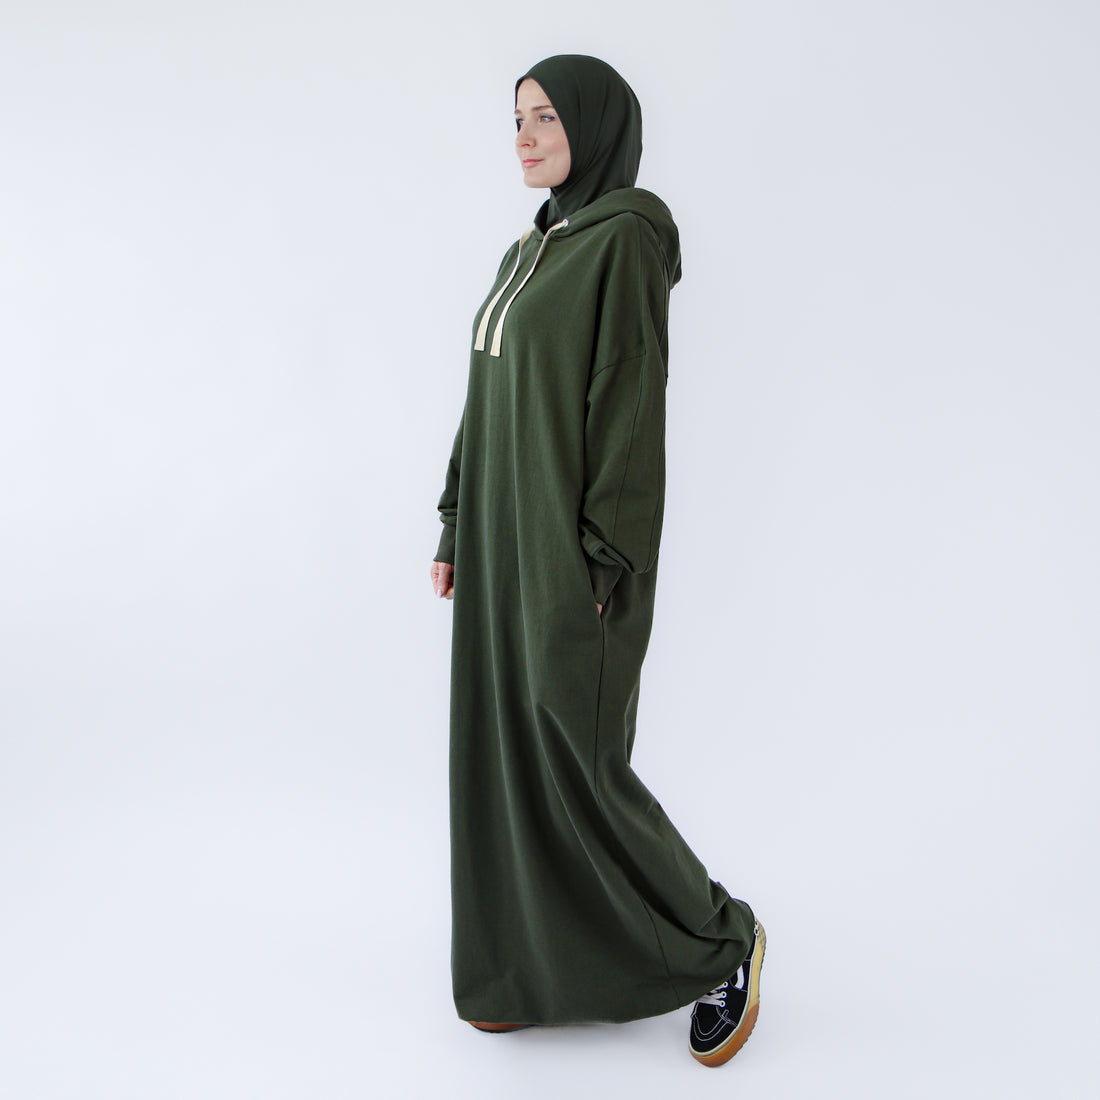 Muslim dress for women "Khaki Oasis" abaya dress style 1